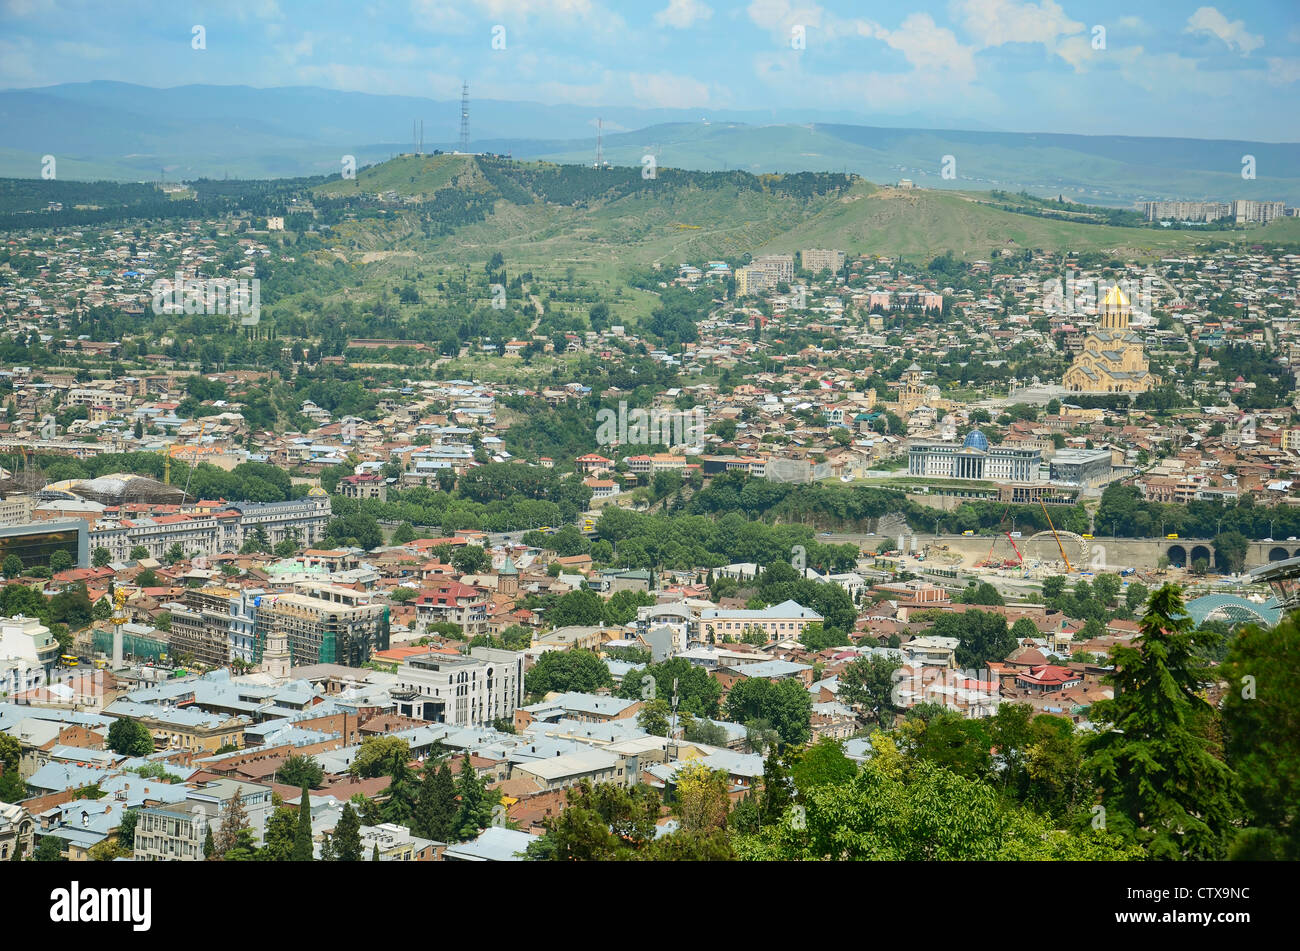 Vue sur la ville de Tbilissi - capitale de la République de Géorgie Banque D'Images